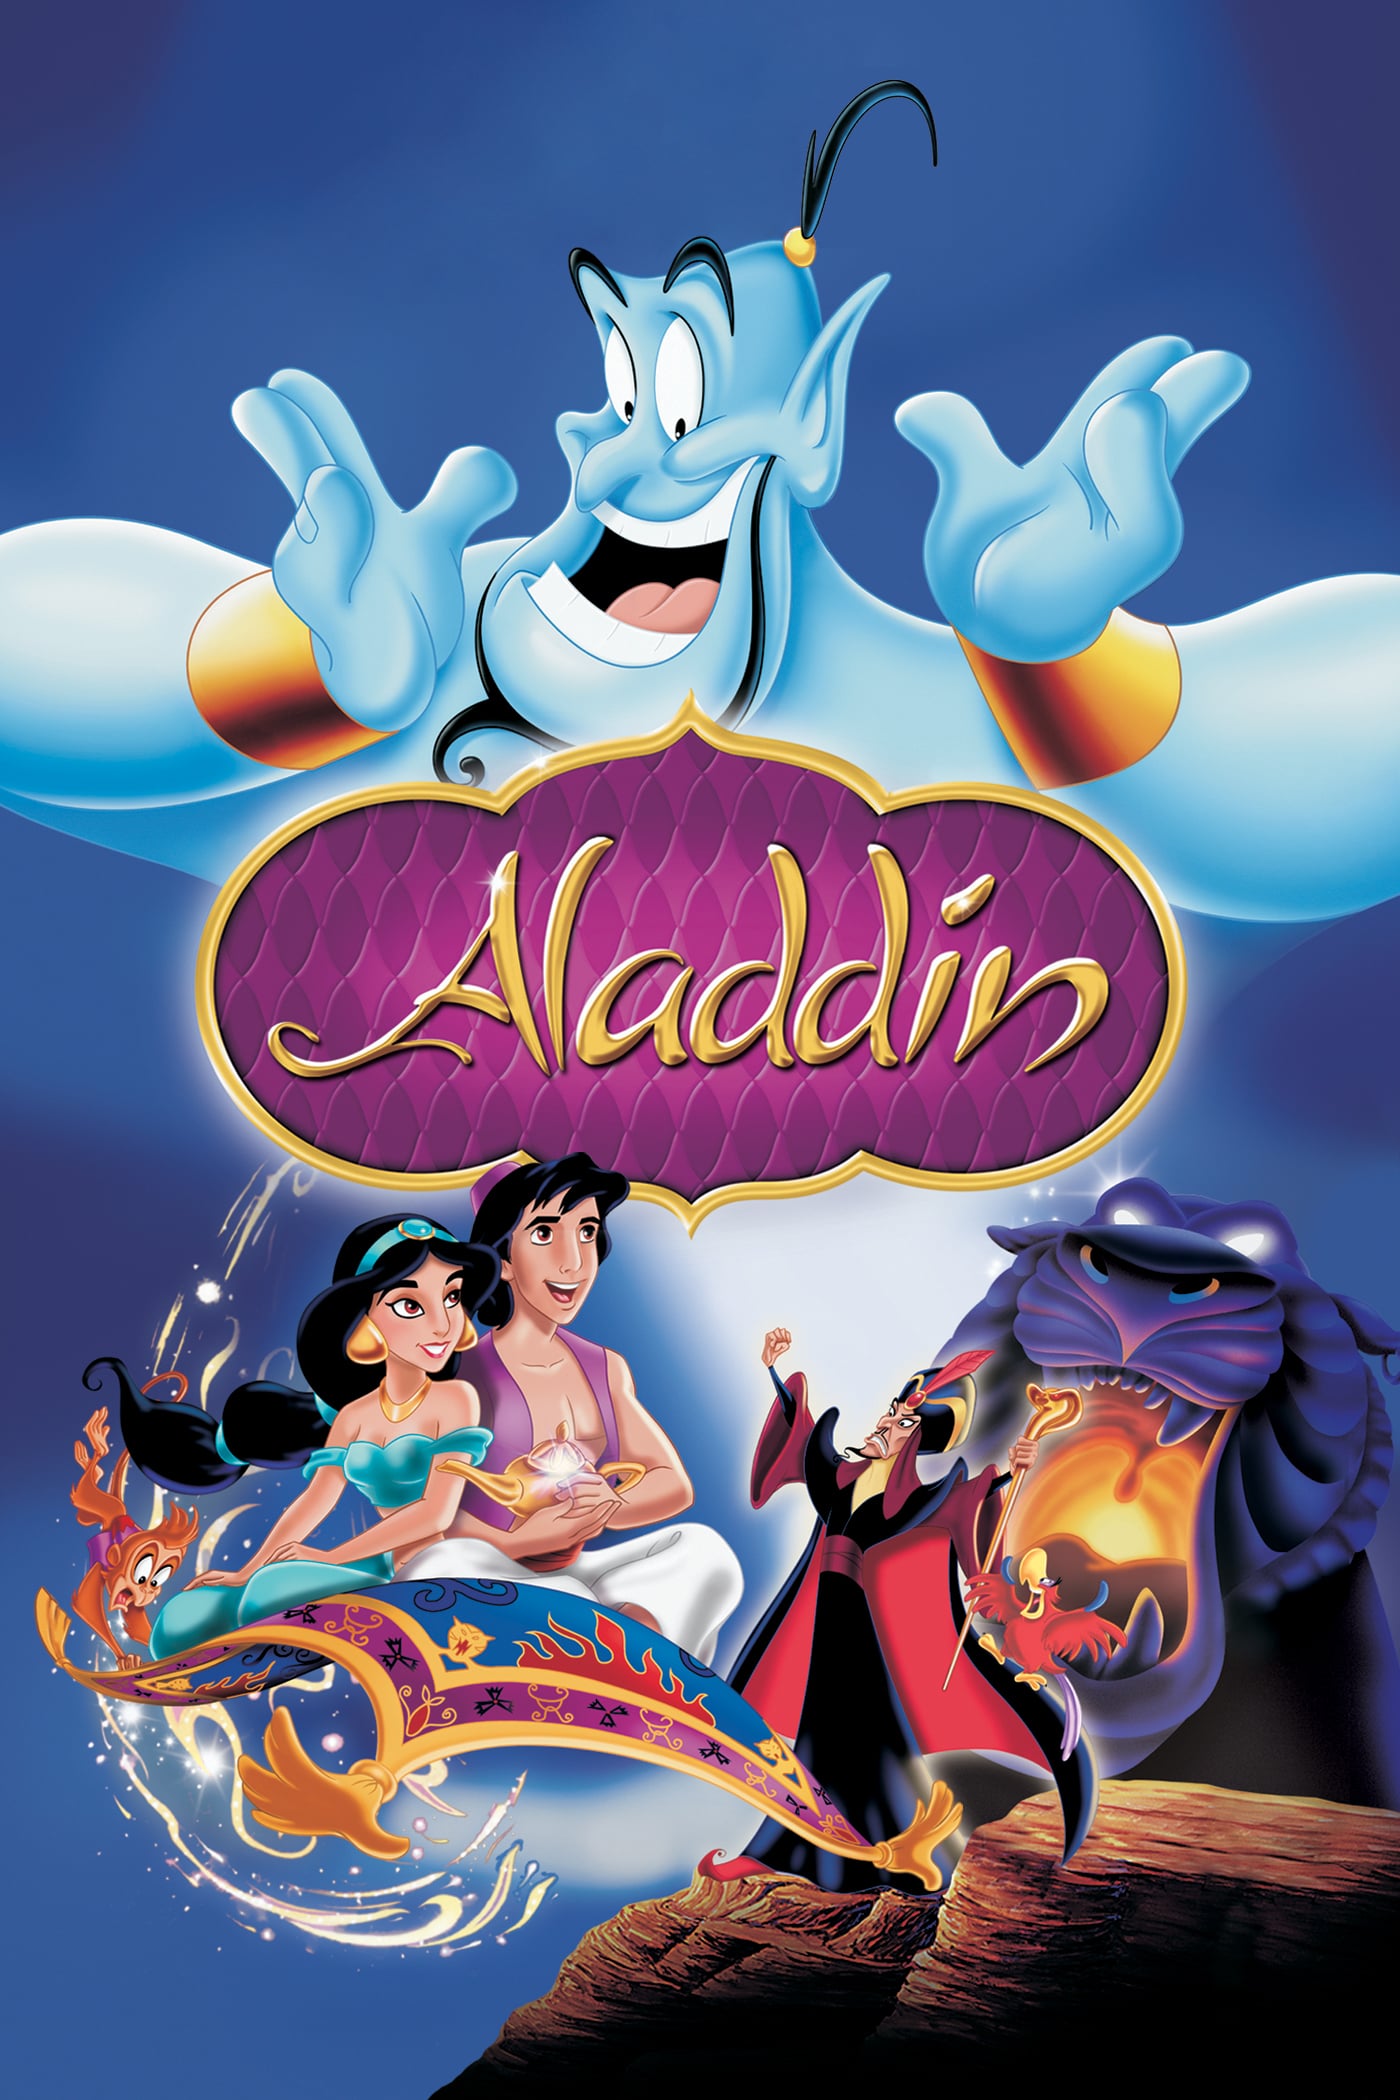 Plakat von "Aladdin"